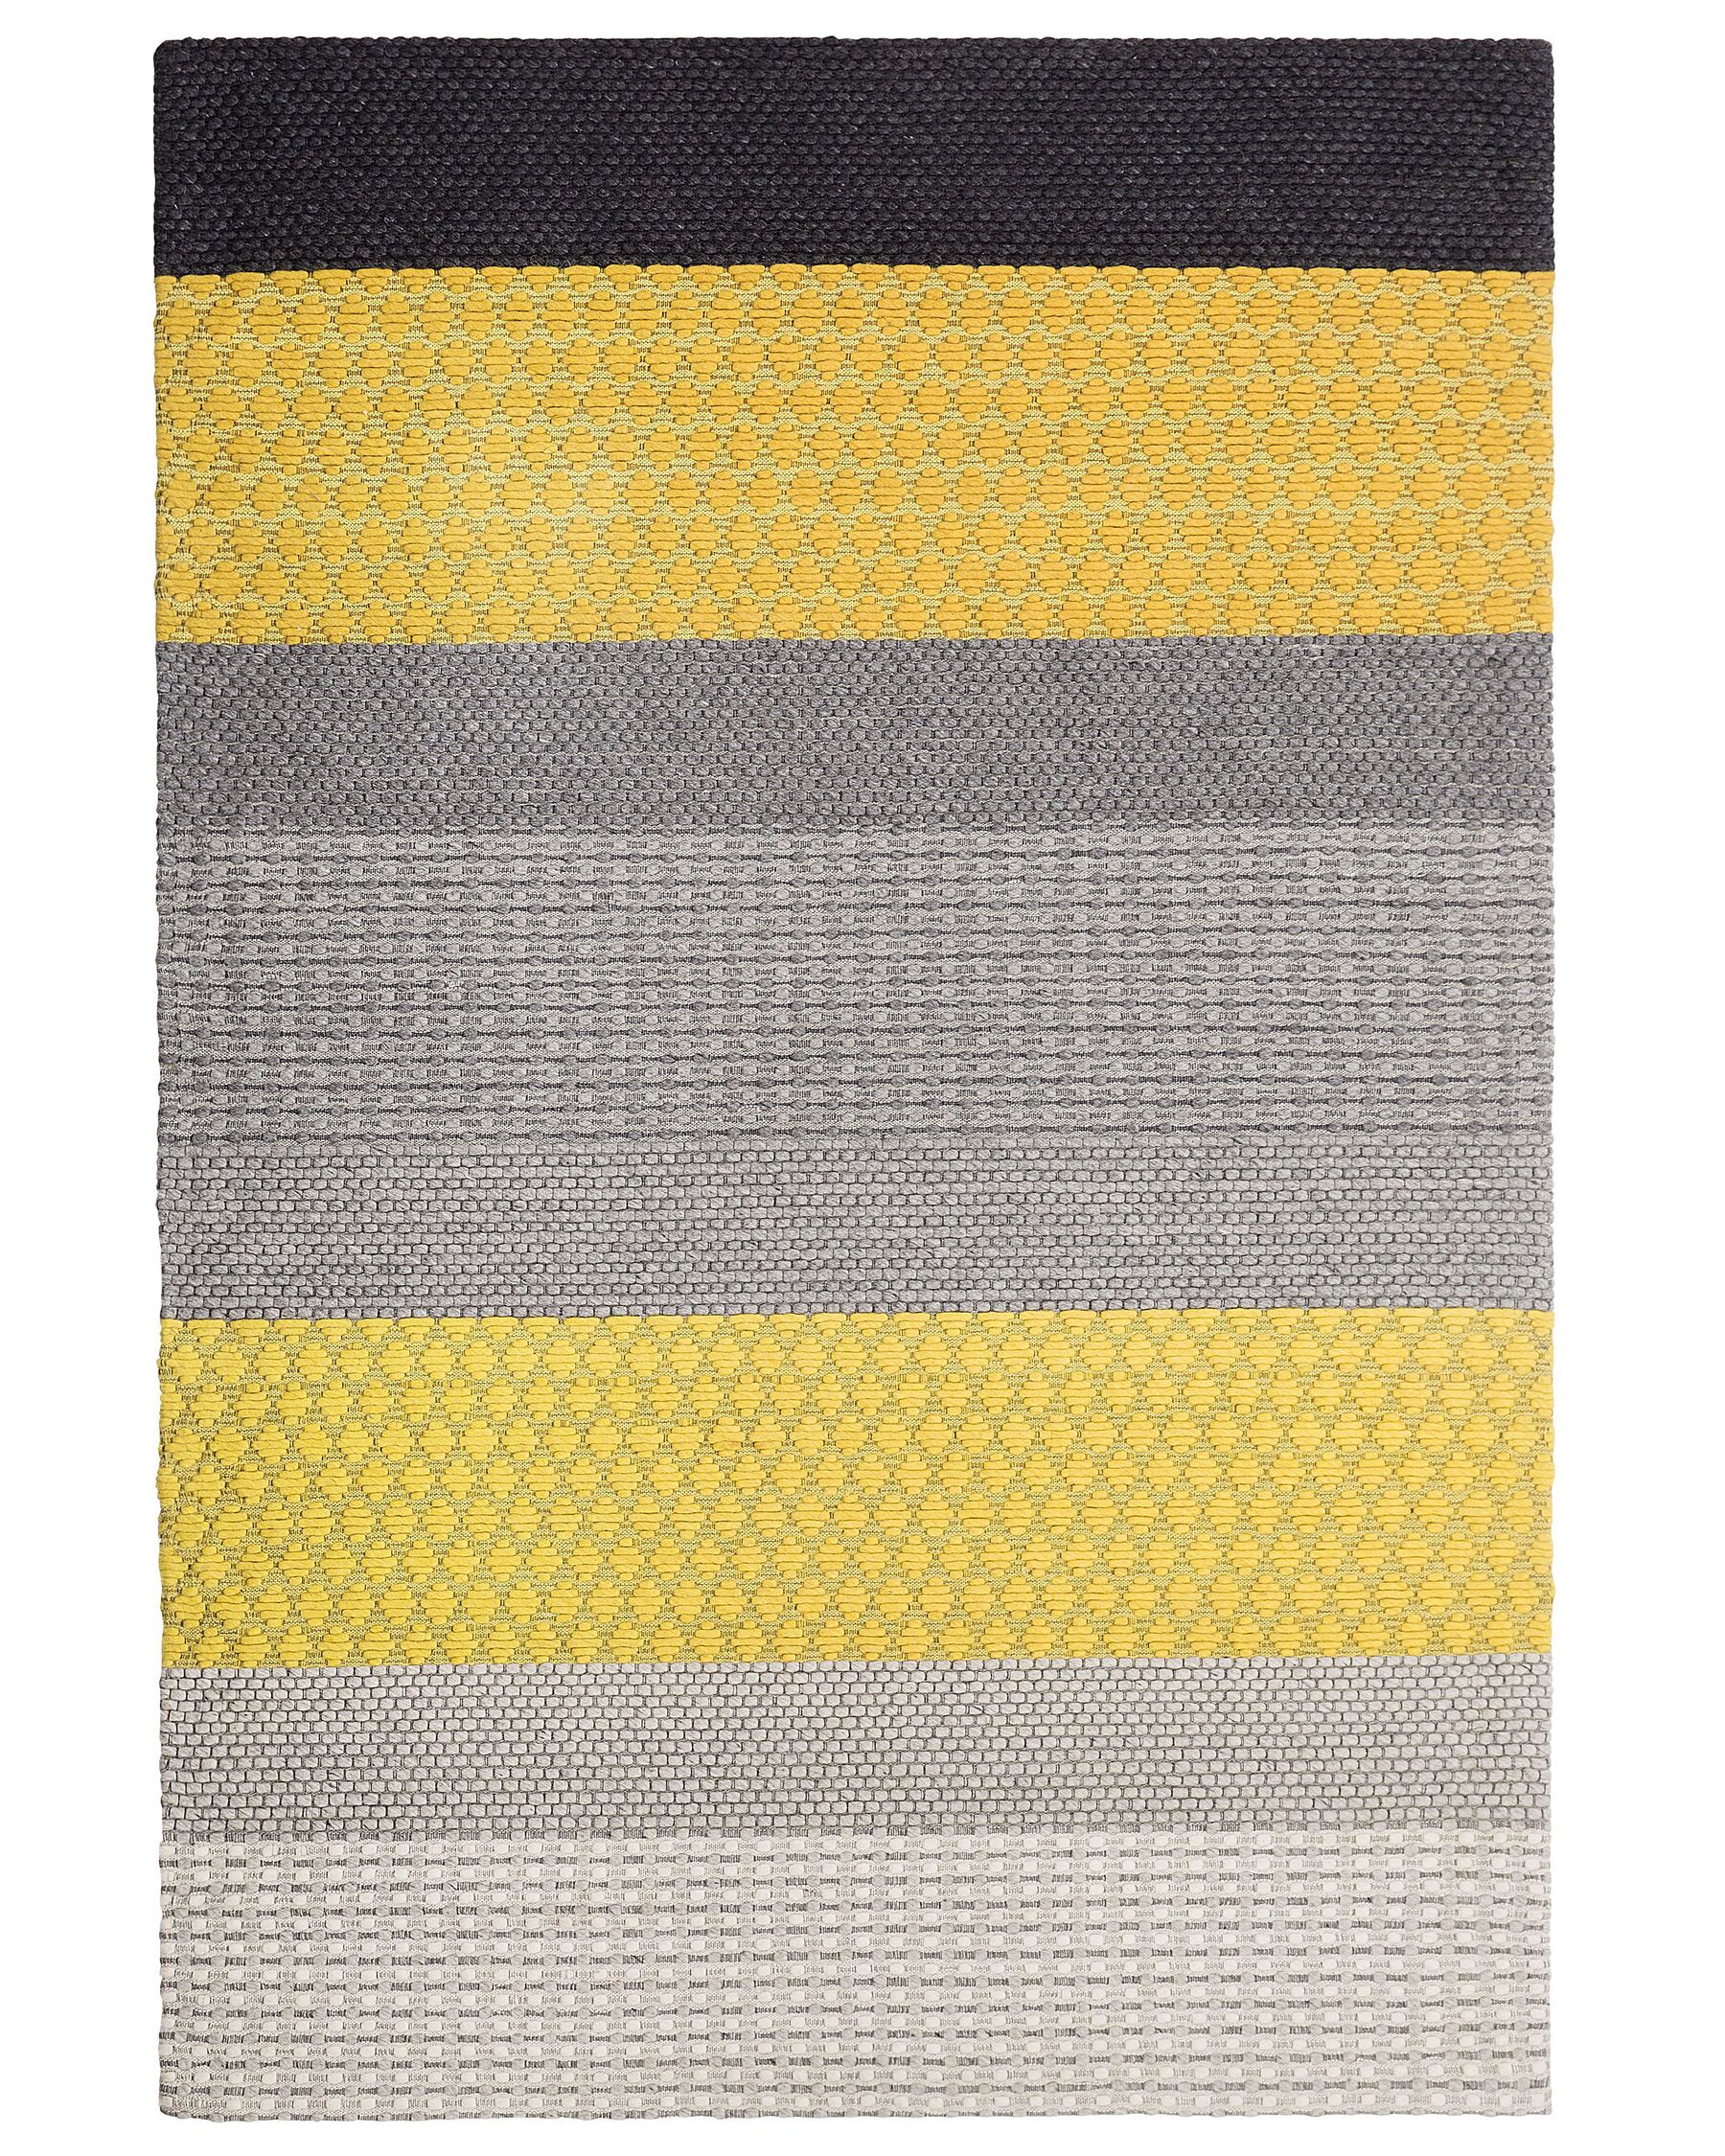 Wool Area Rug 140 x 200 cm Yellow and Grey AKKAYA_750906